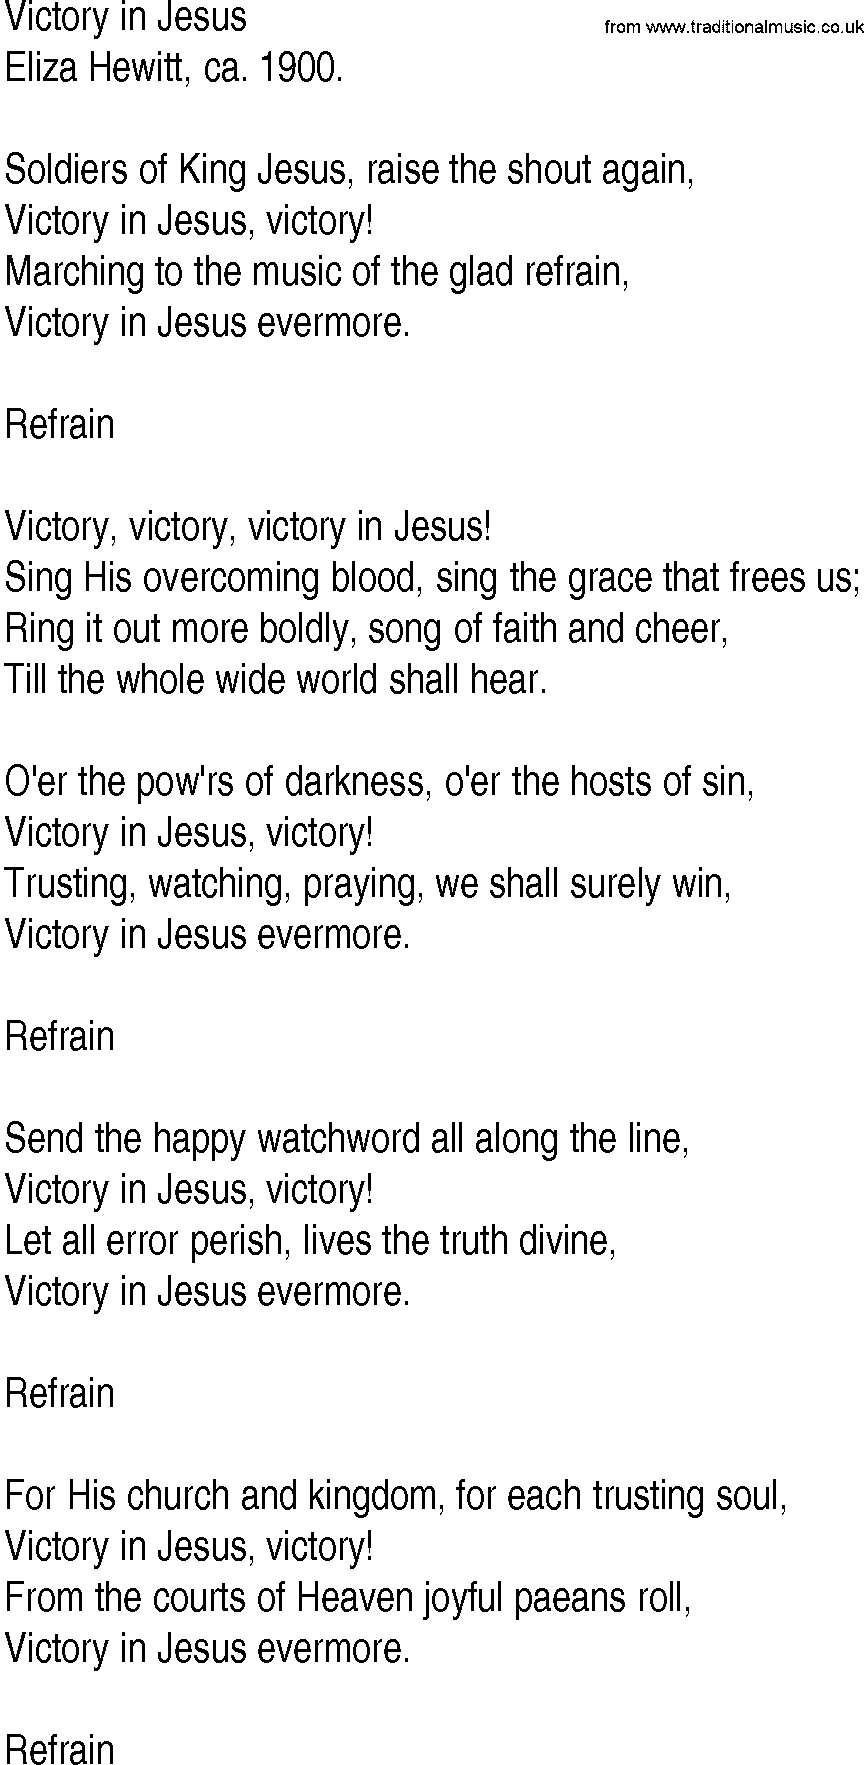 Hymn and Gospel Song: Victory in Jesus by Eliza Hewitt ca lyrics